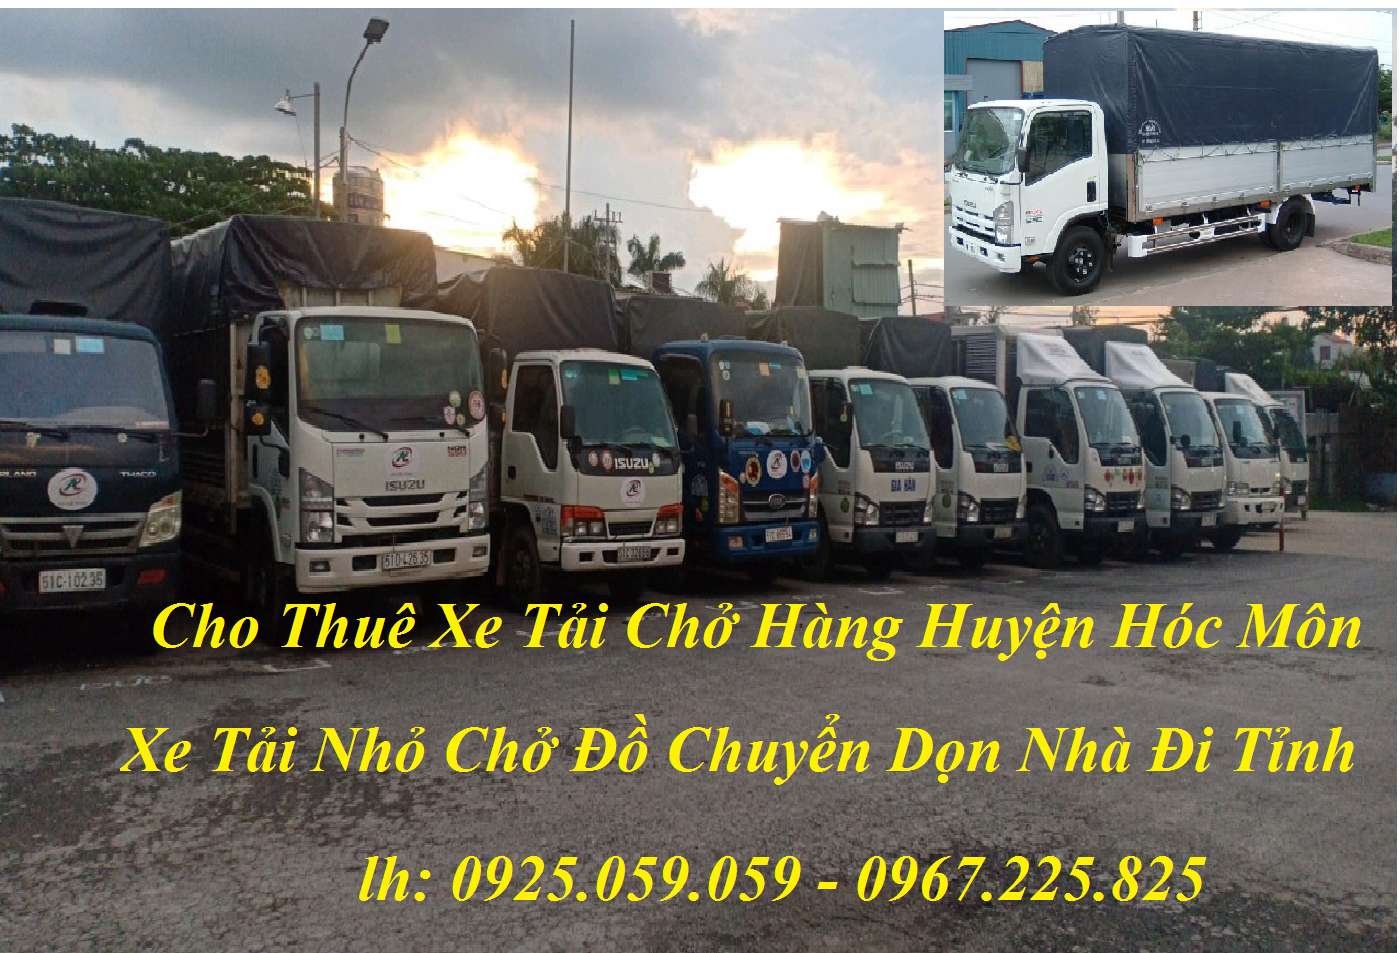 Cho thuê xe tải chở hàng Hóc Môn